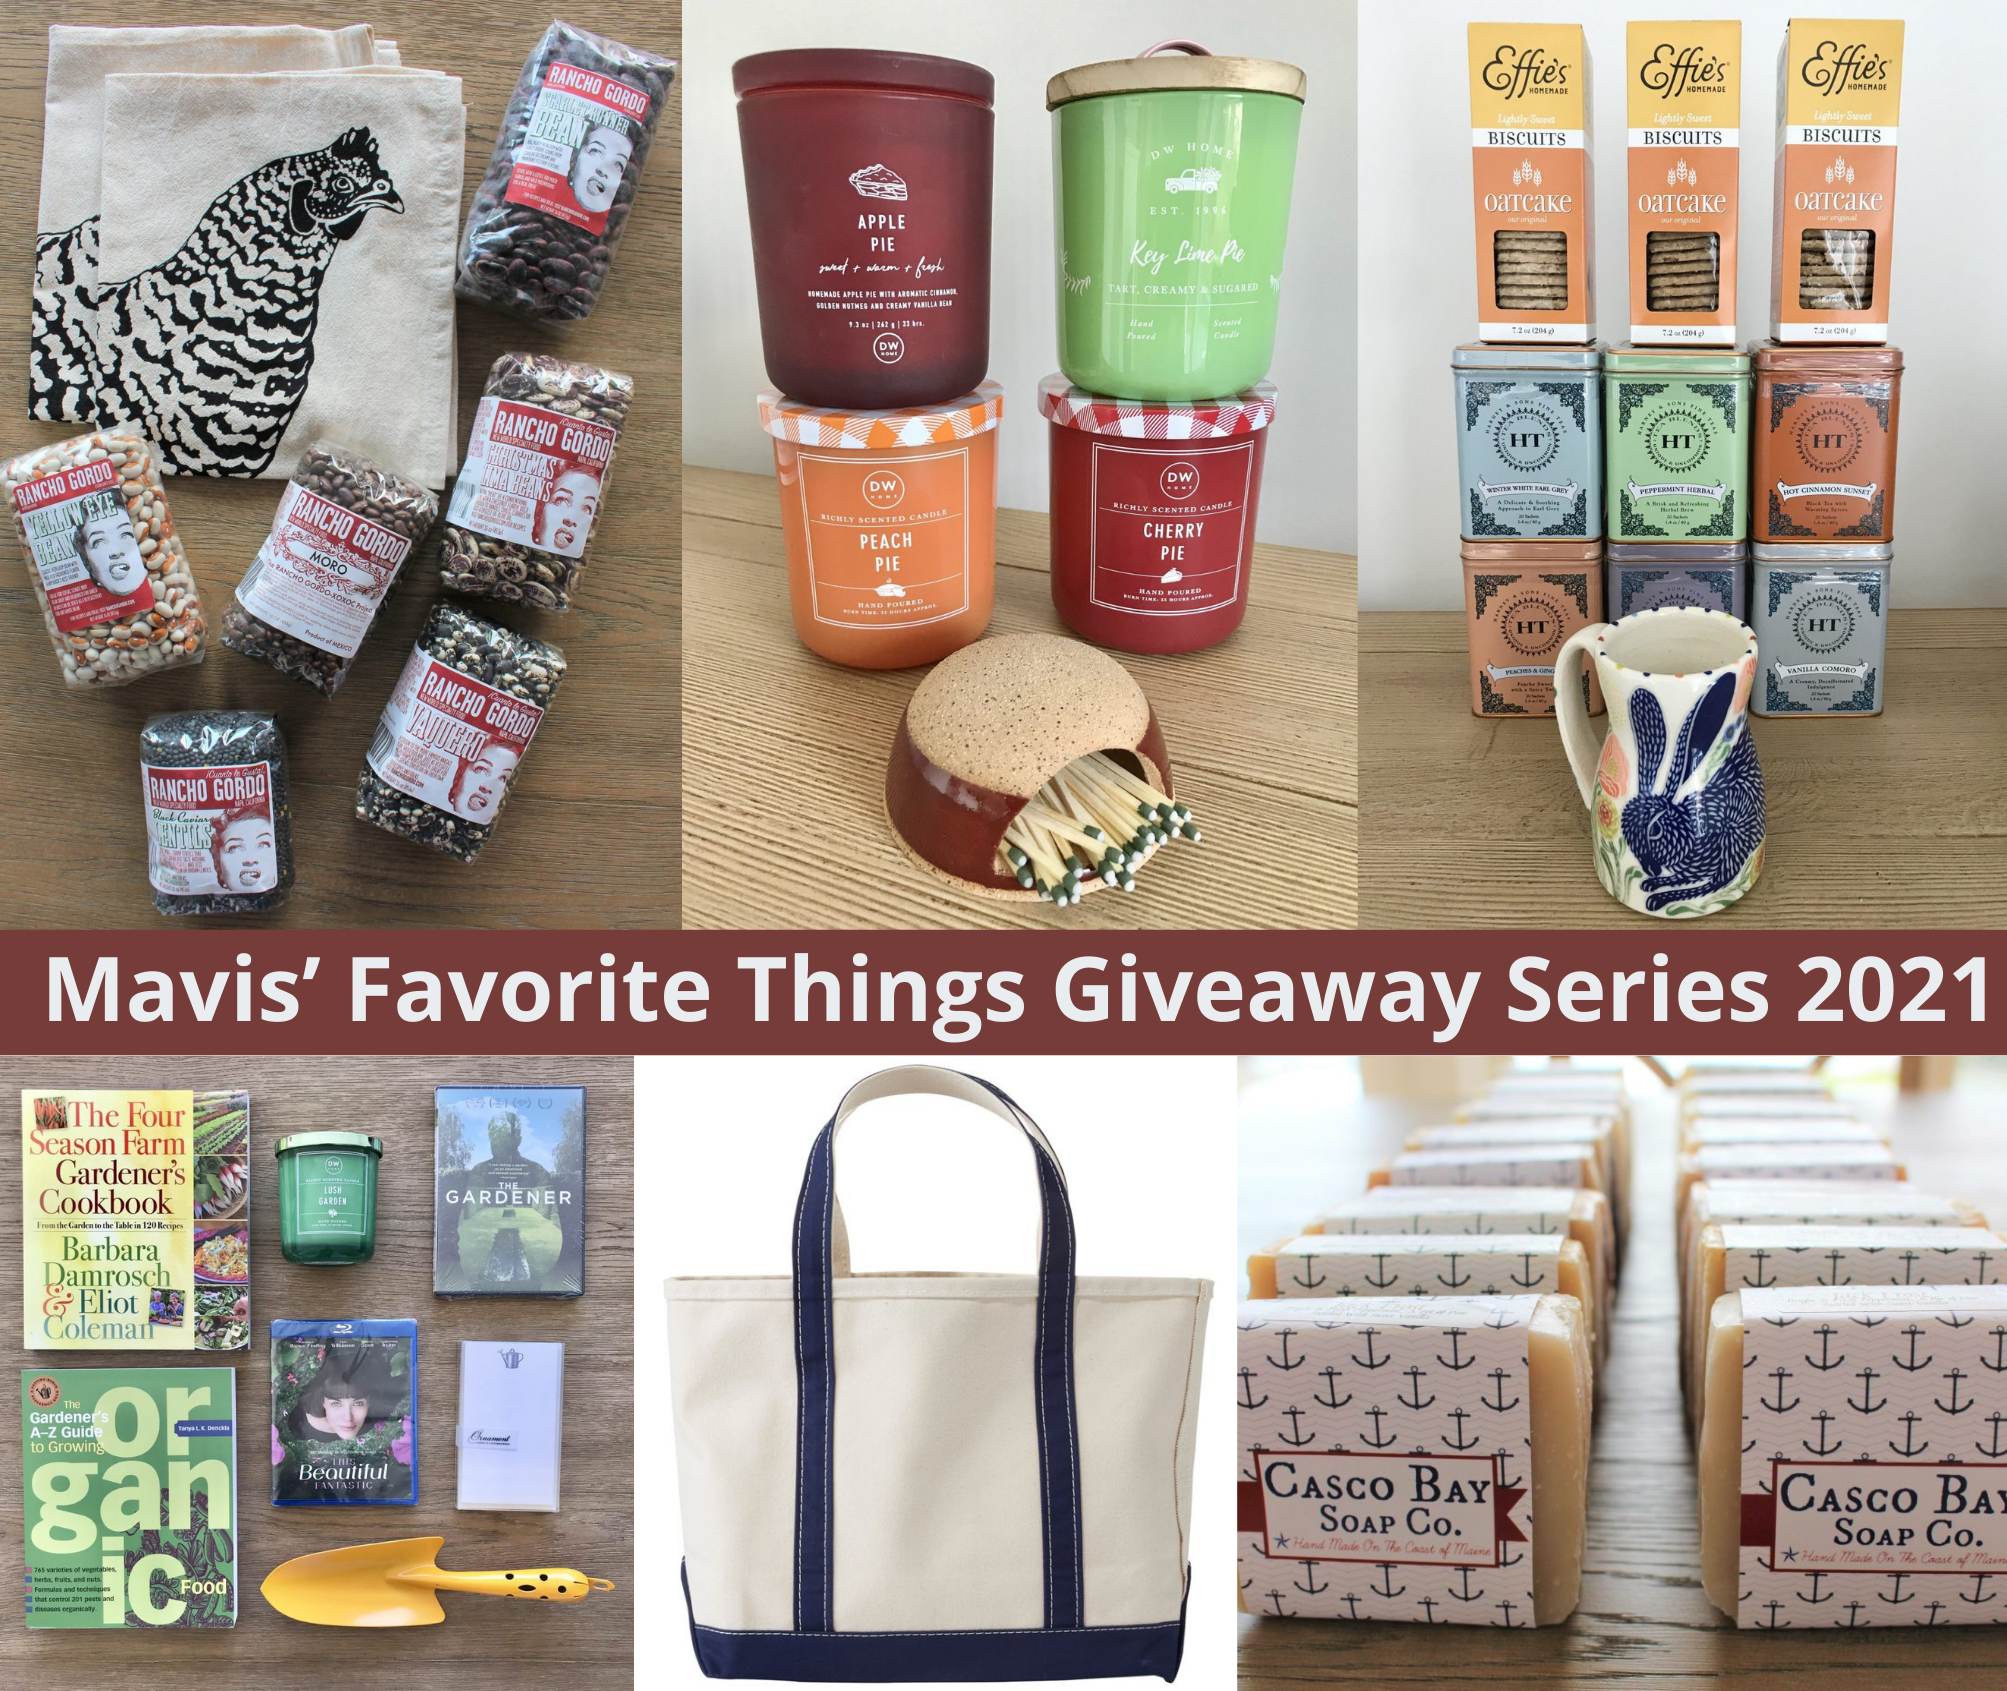 Winners Announced – Mavis’ Favorite Things Giveaway Series 2021